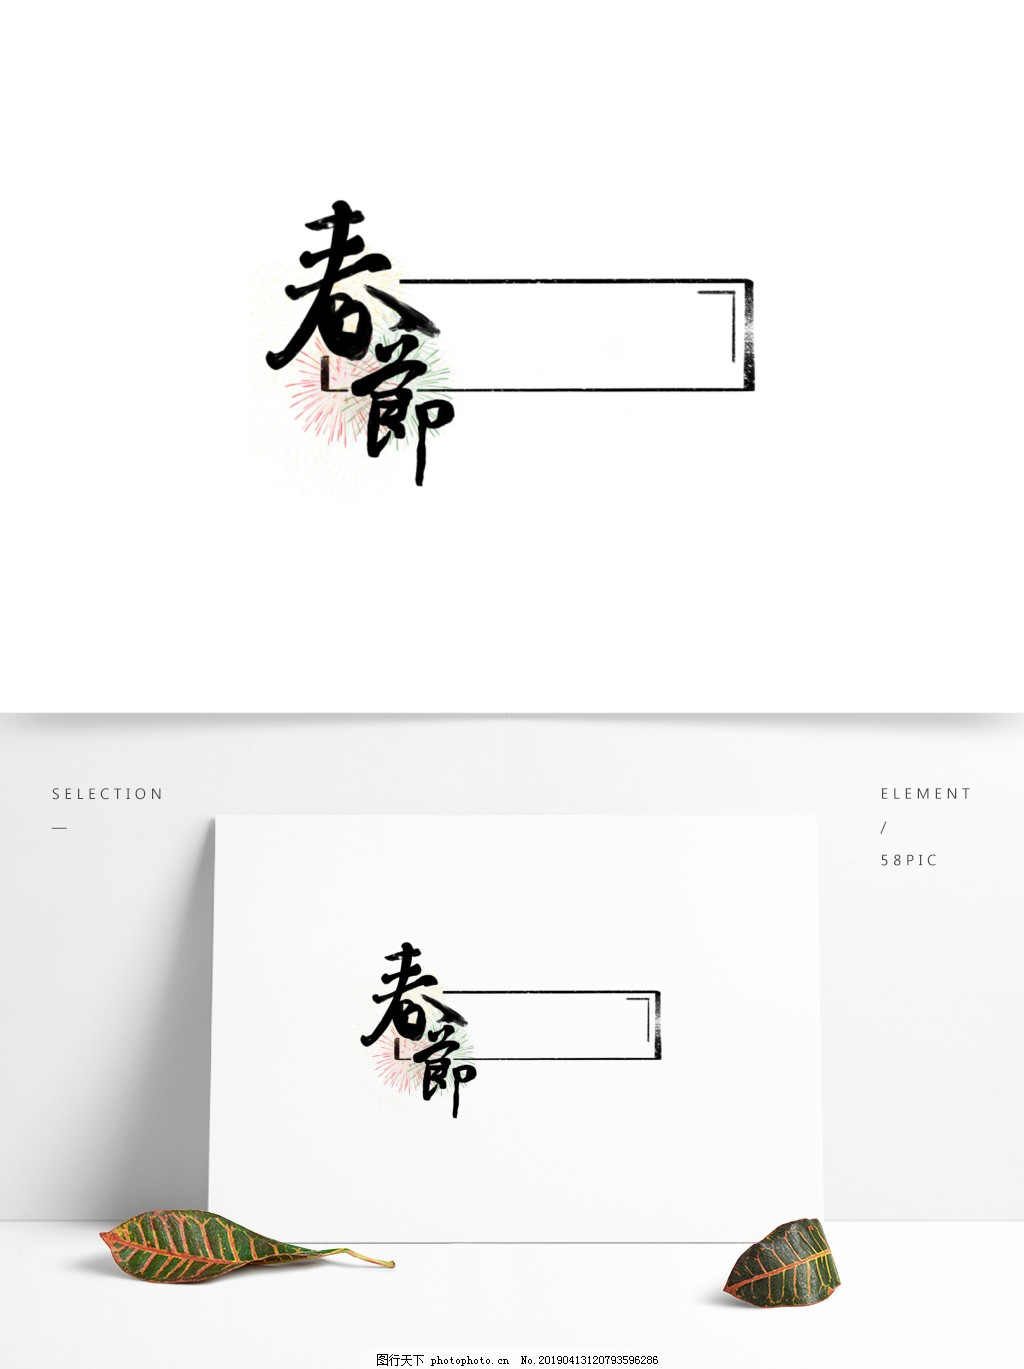 ‘~中国风行书春节烟花艺术字标题框图片_纹理边框_平面创作元素-  ~’ 的图片